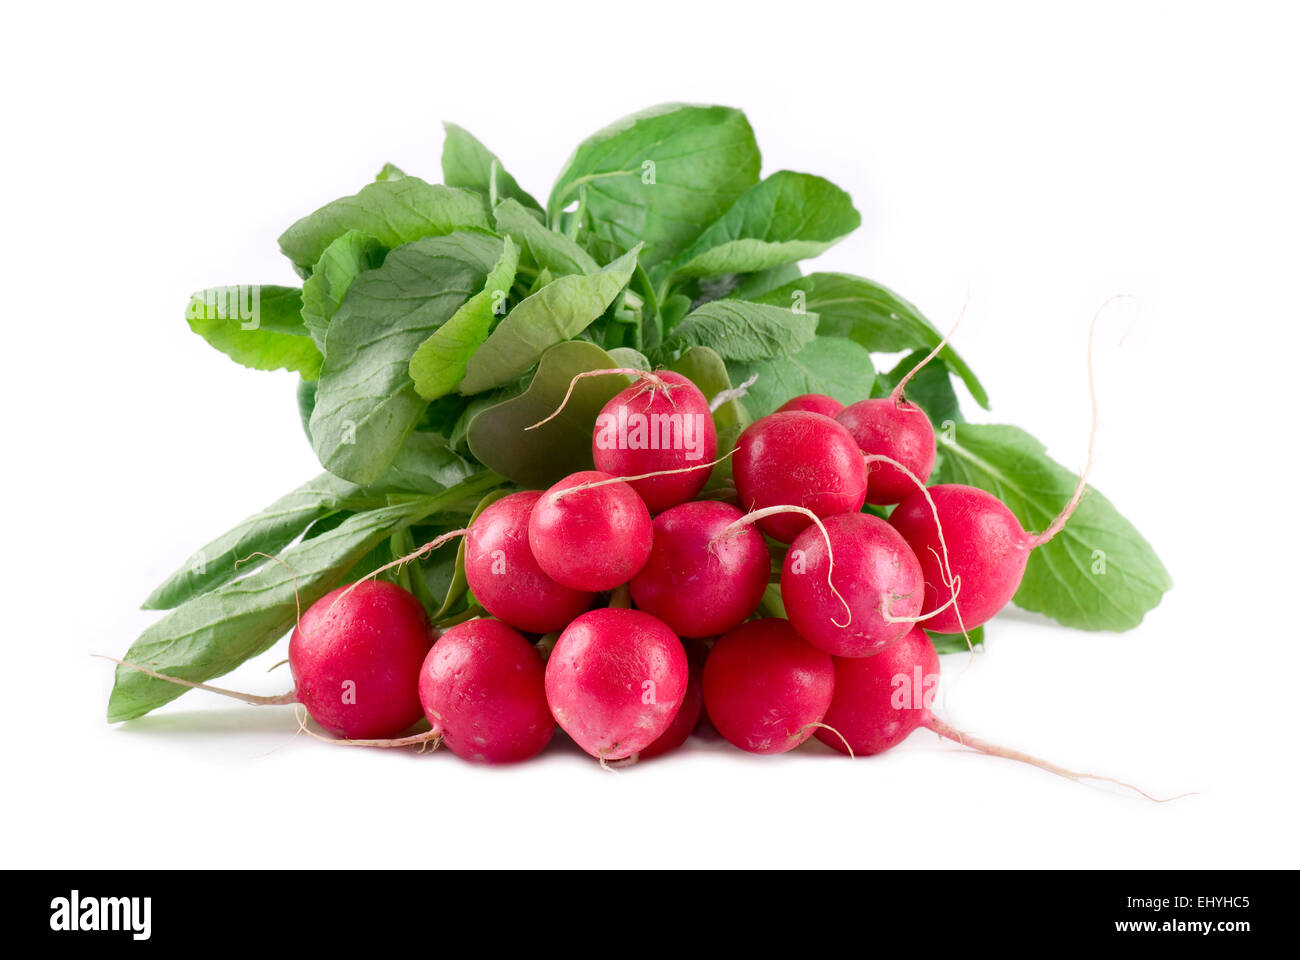 Fresh radishes on white background close up. Stock Photo